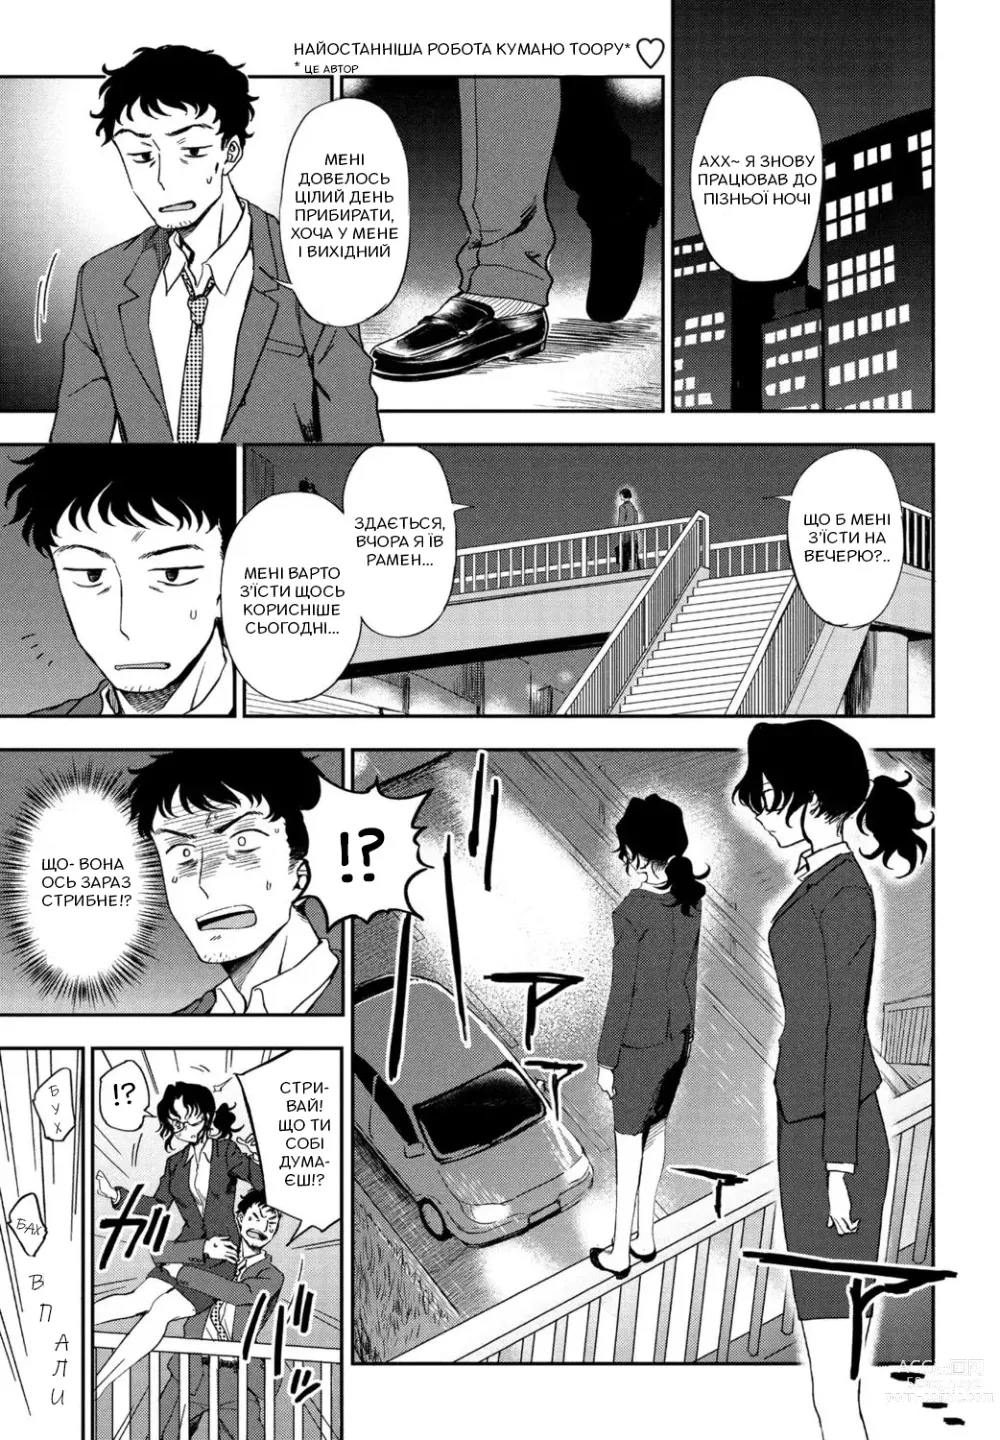 Page 1 of manga [Кумано Тоору] Мій ідеальний господар